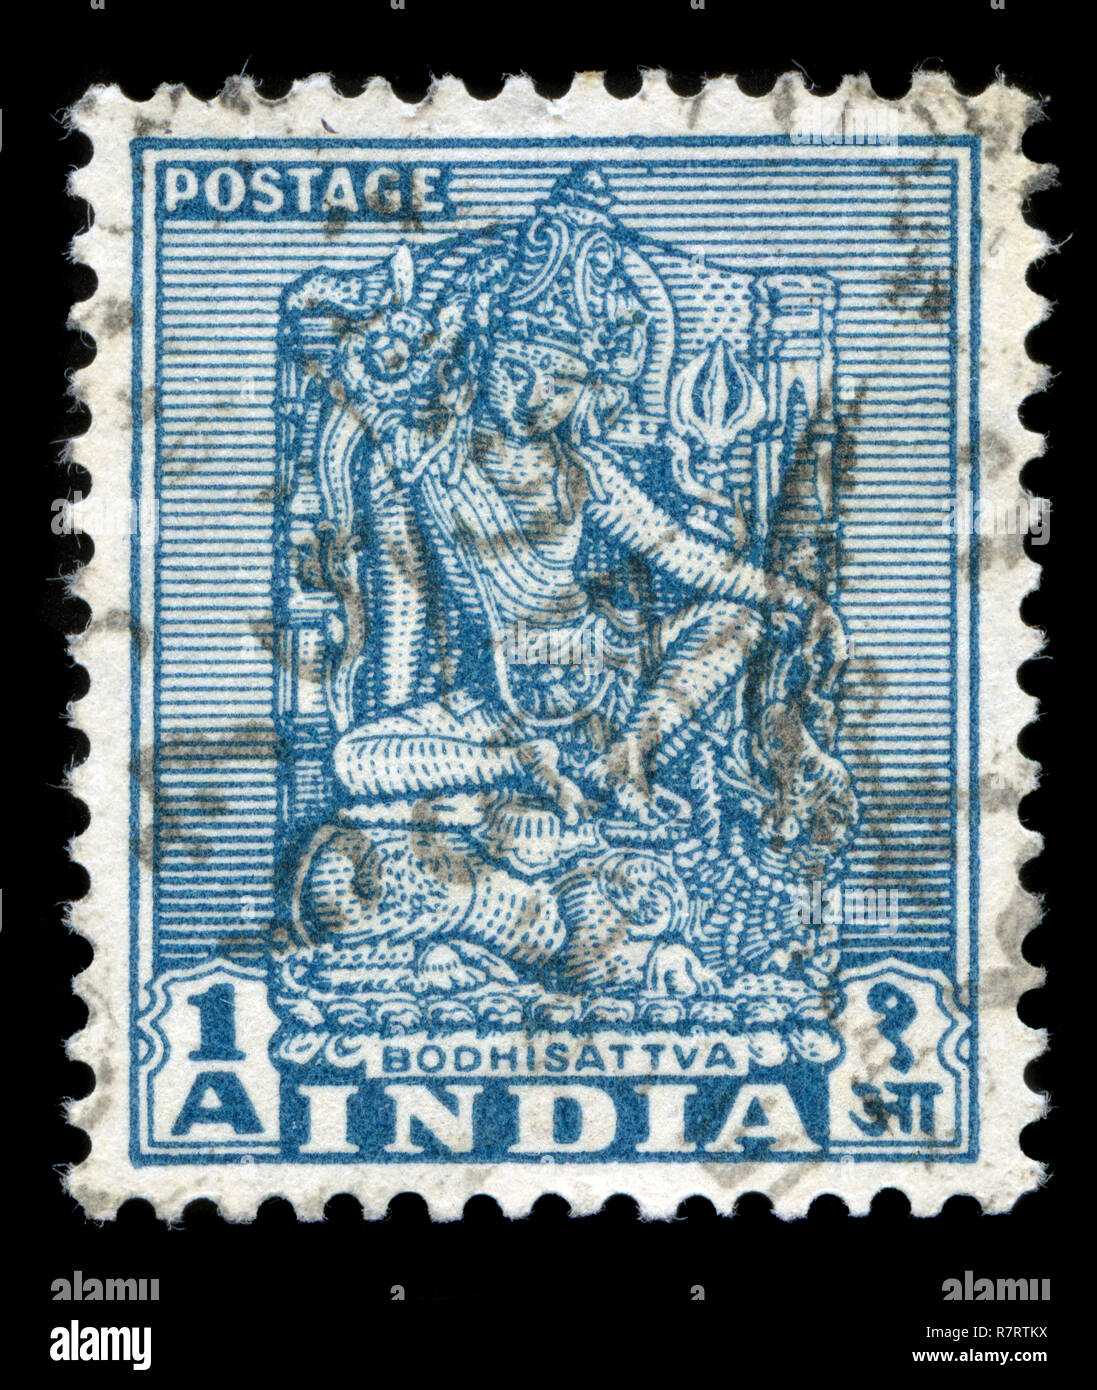 Francobollo da India nei monumenti e templi (1949-52) serie rilasciato in Foto Stock